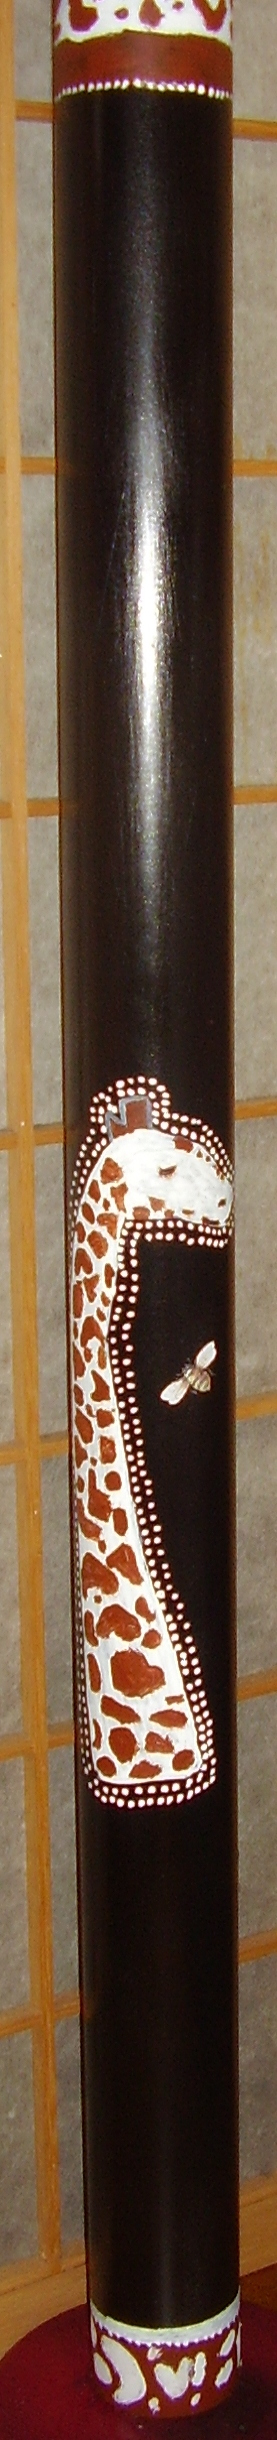 giraffe didge